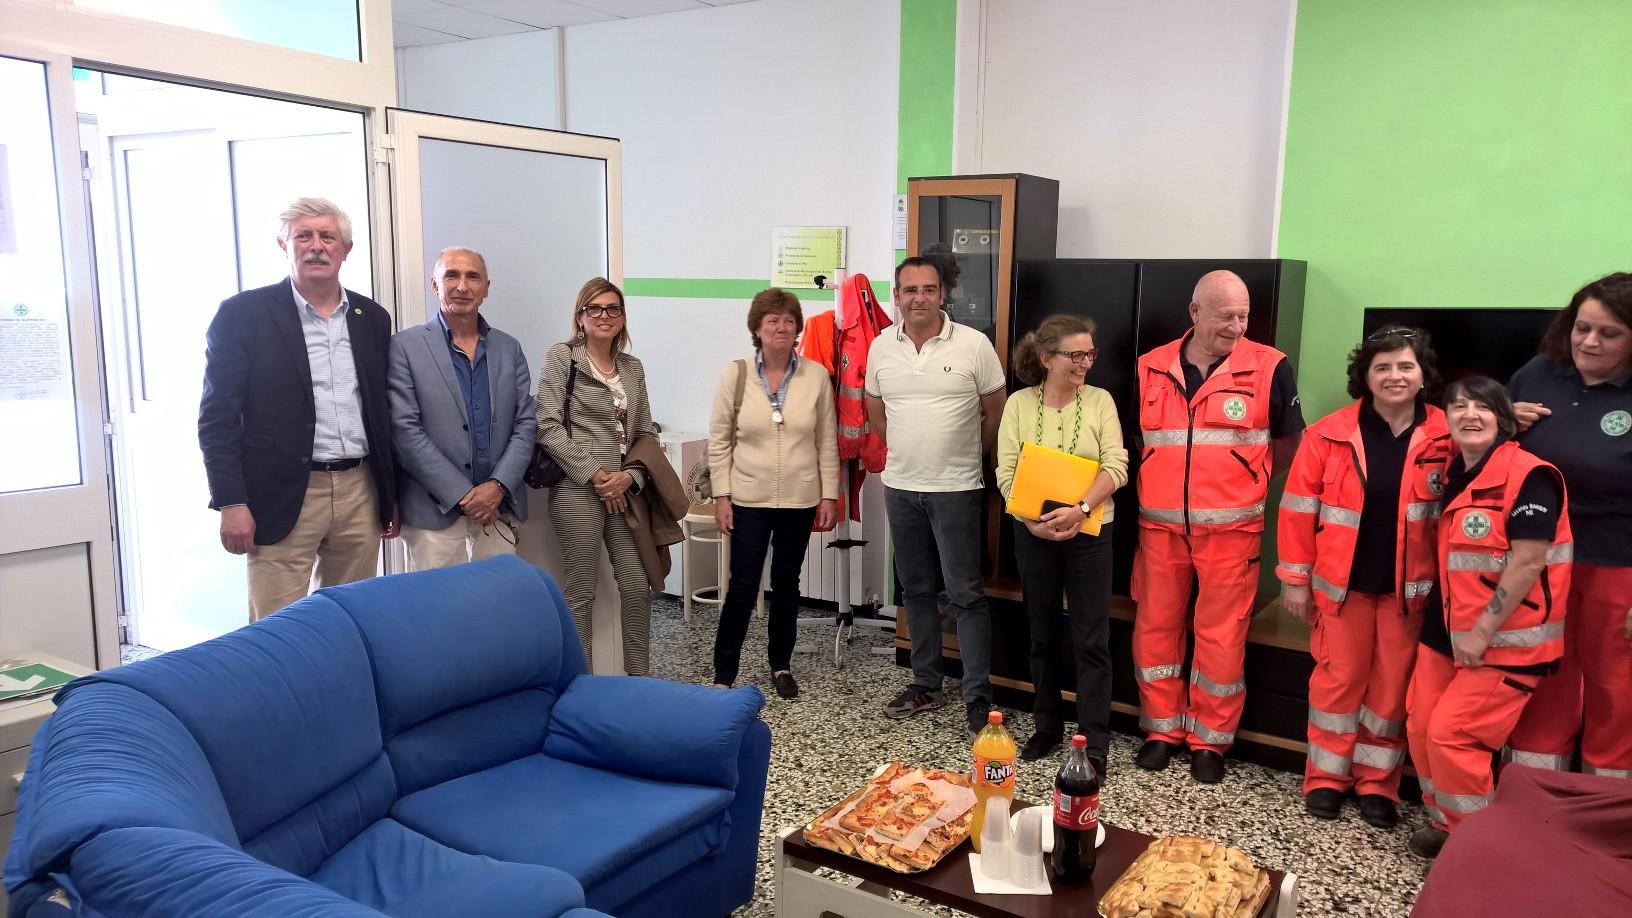 Arriva un ambulatori medico in Val Graveglia: allestito dalla Croce verde, presto l’inaugurazione